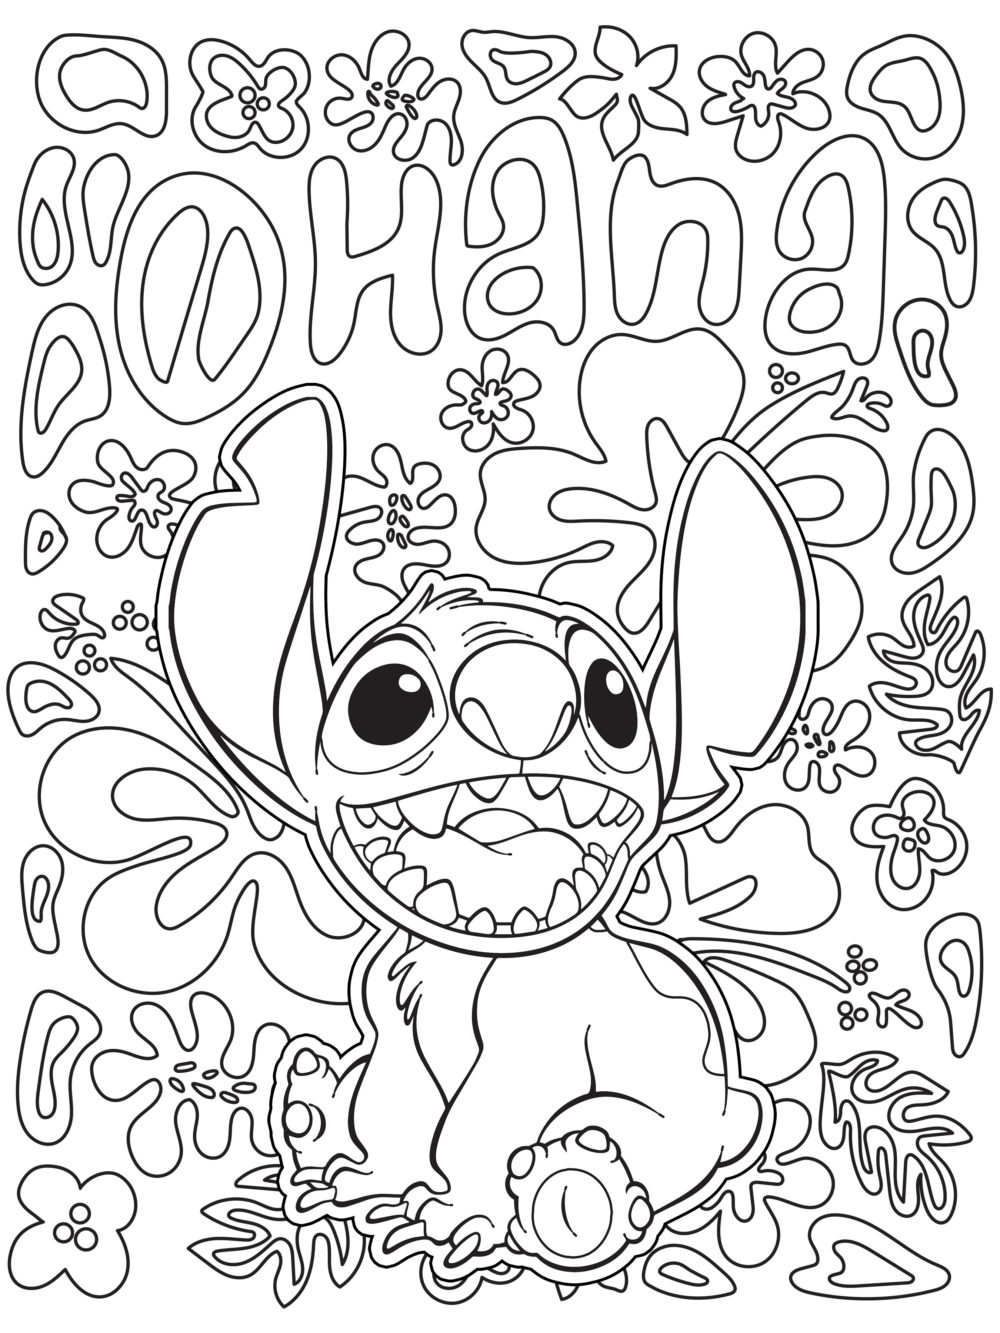 Lilo and Stitch Coloring Page   Lilo & Stitch Photo ...